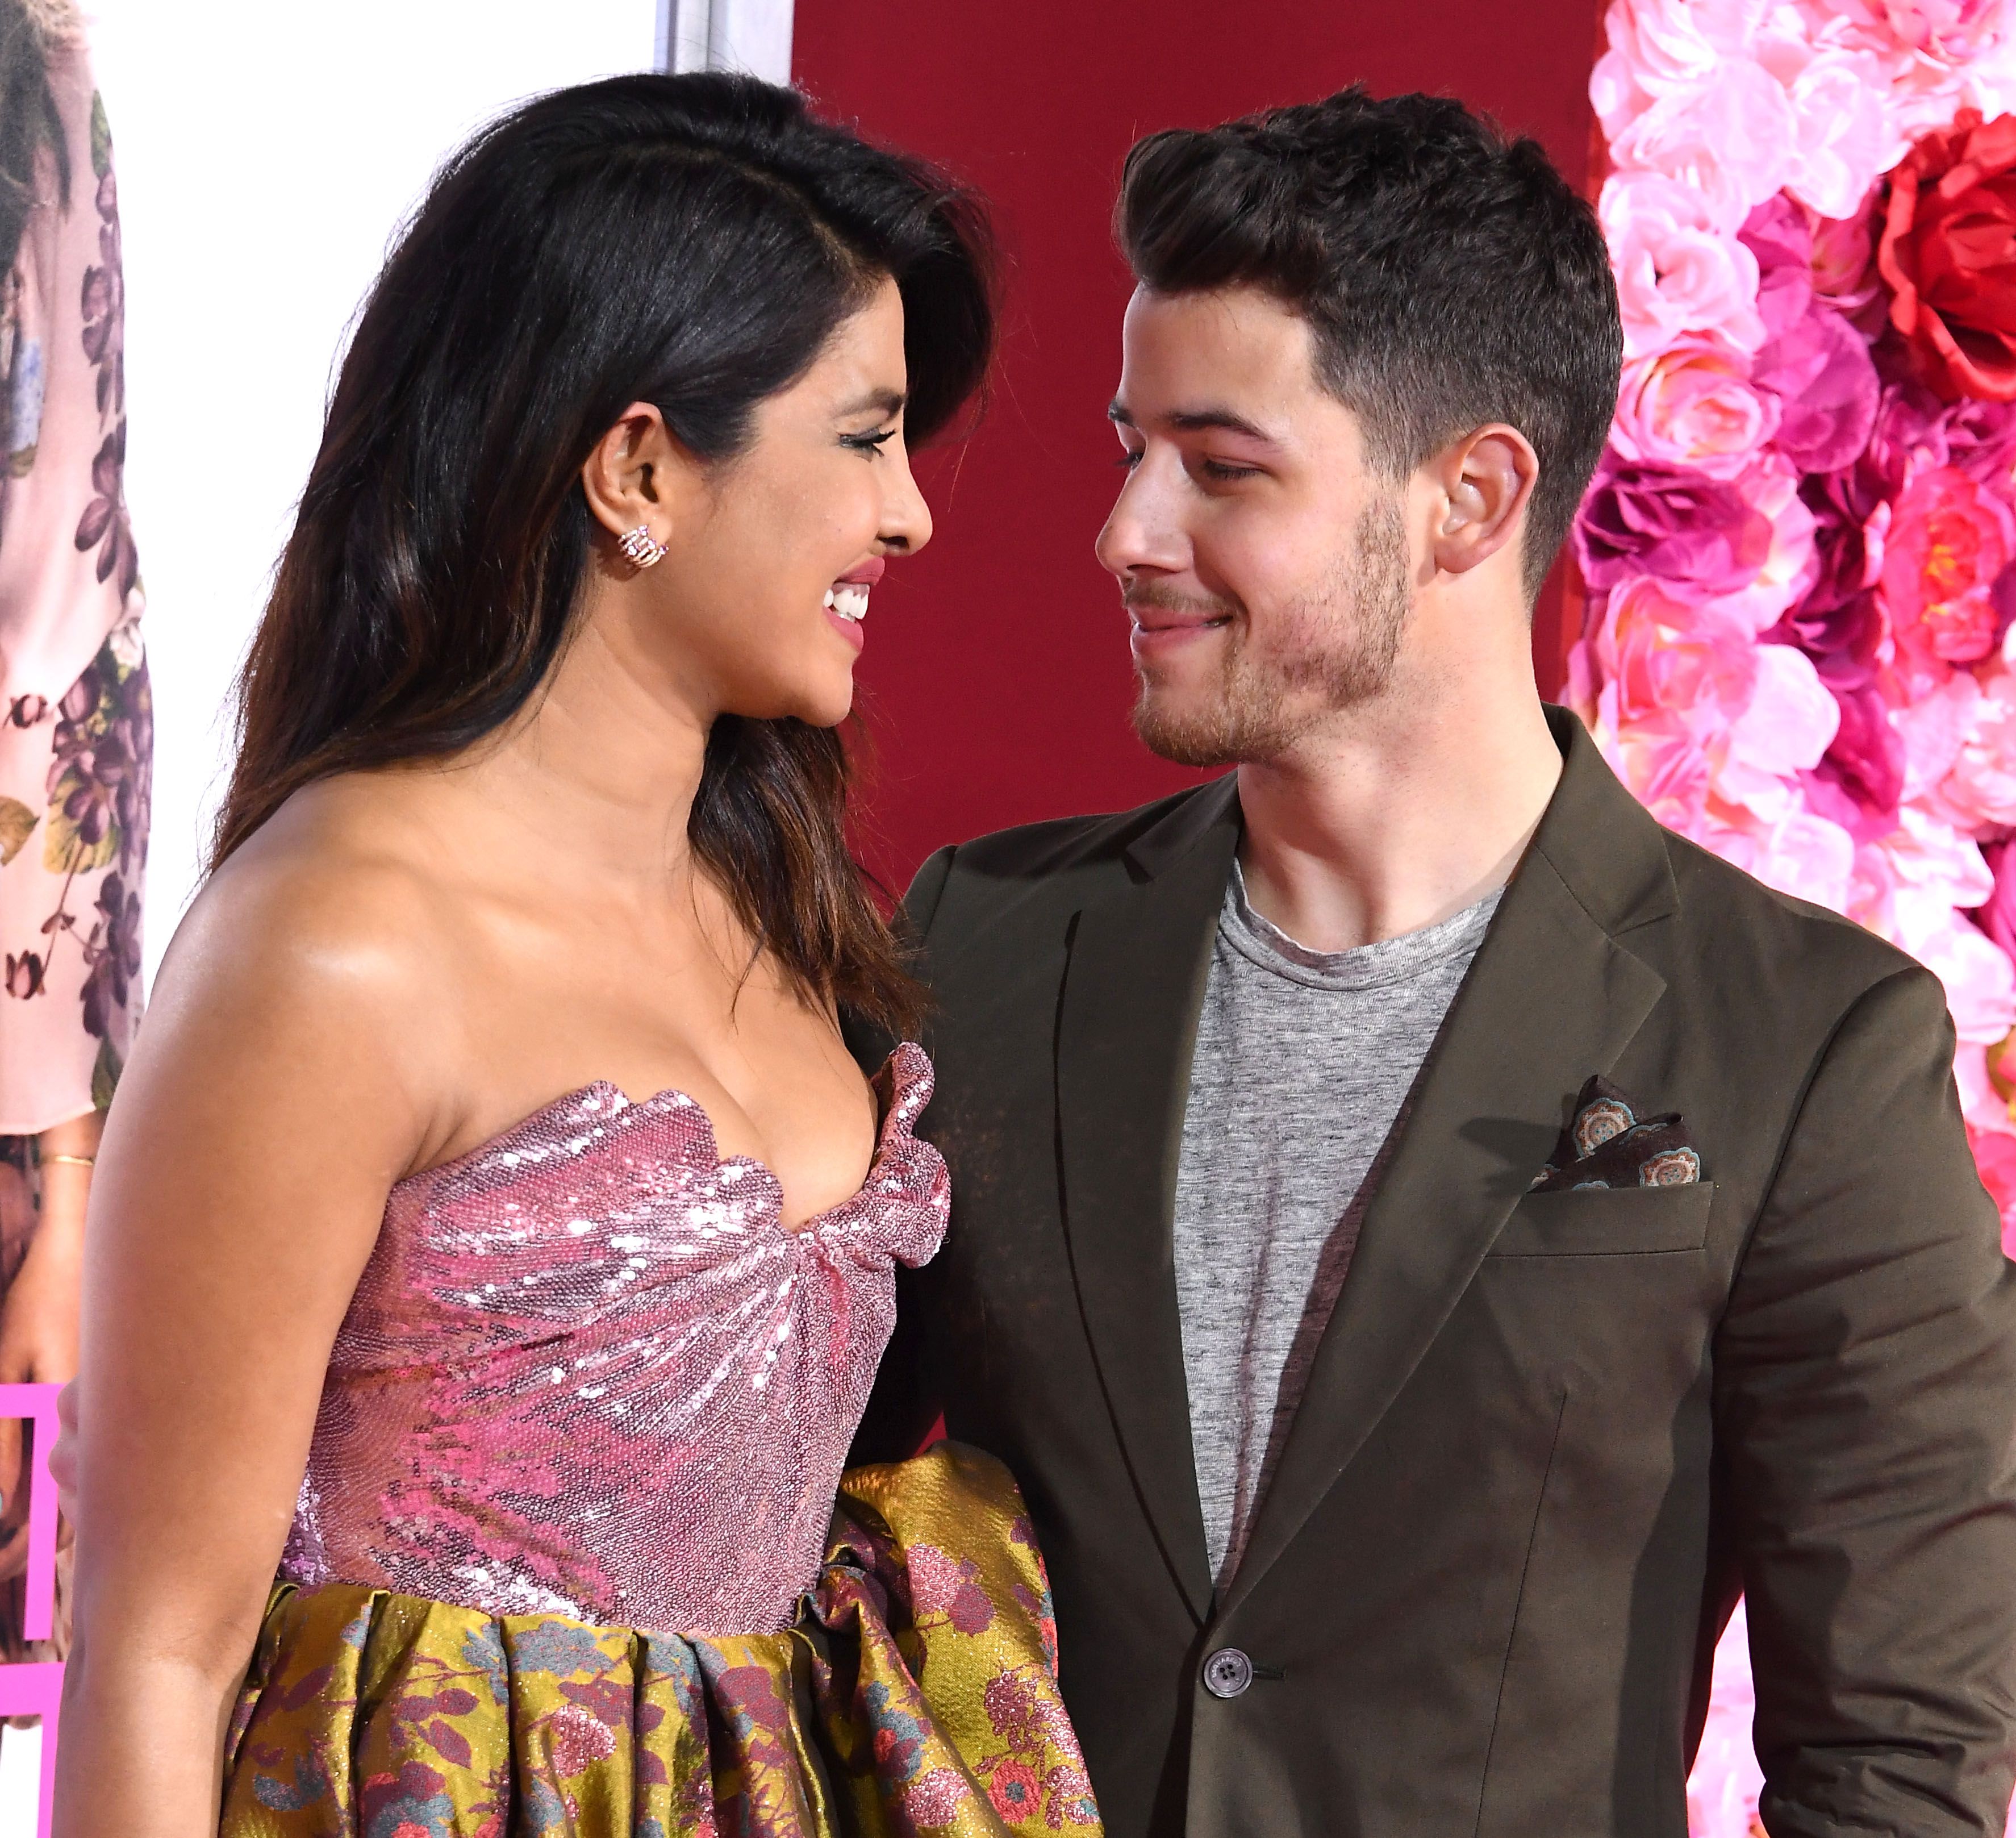 Nick Jonas verrät, wie die Liebesgeschichte zwischen ihm und Priyanka Chopra begonnen hat